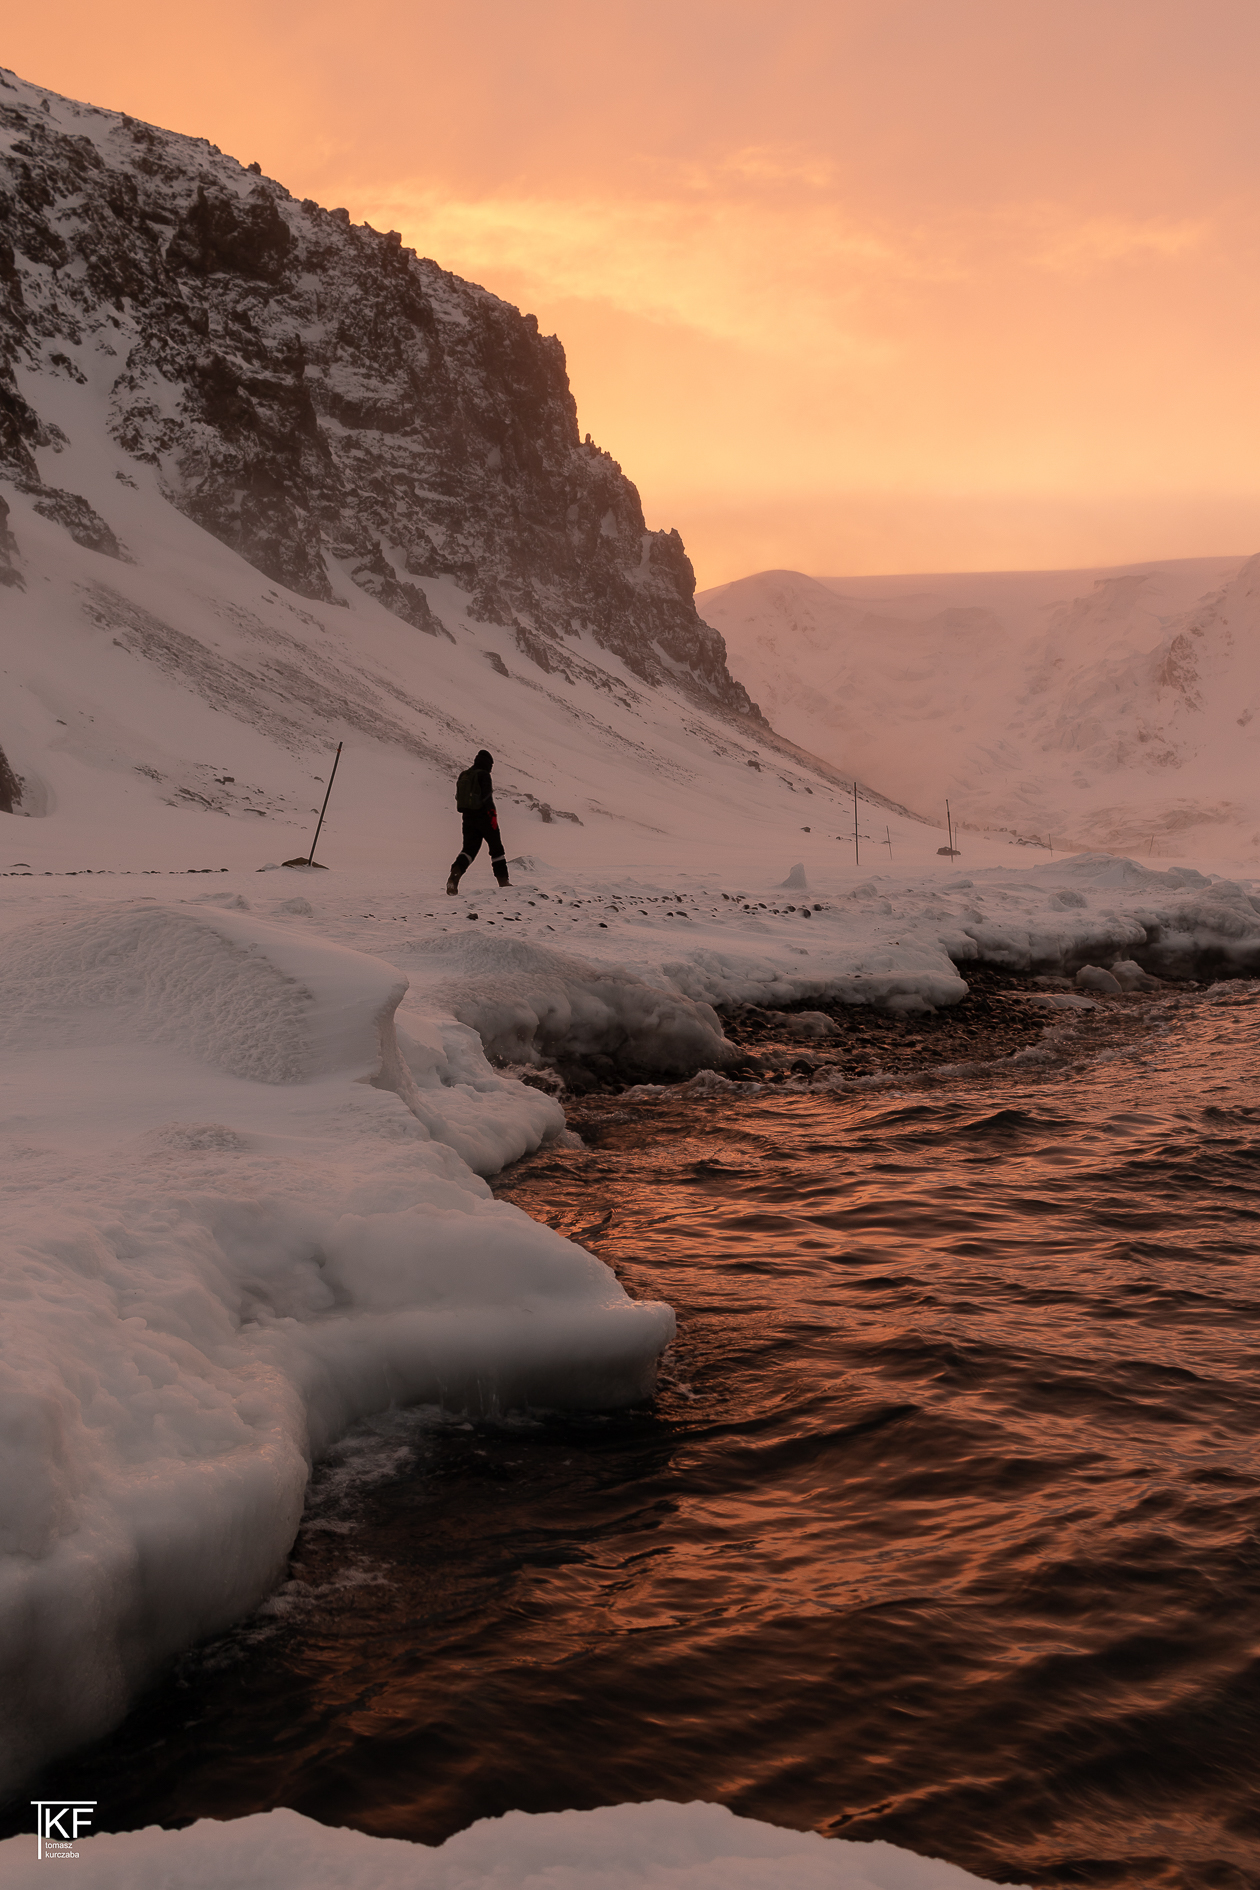 Na zdjęciu idący mężczyzna, dookoła pokrywa śnieżna, i woda, w której odbija się wieczorne, pomarańczowe światło, niebo również w kolorze pomarańczowym.